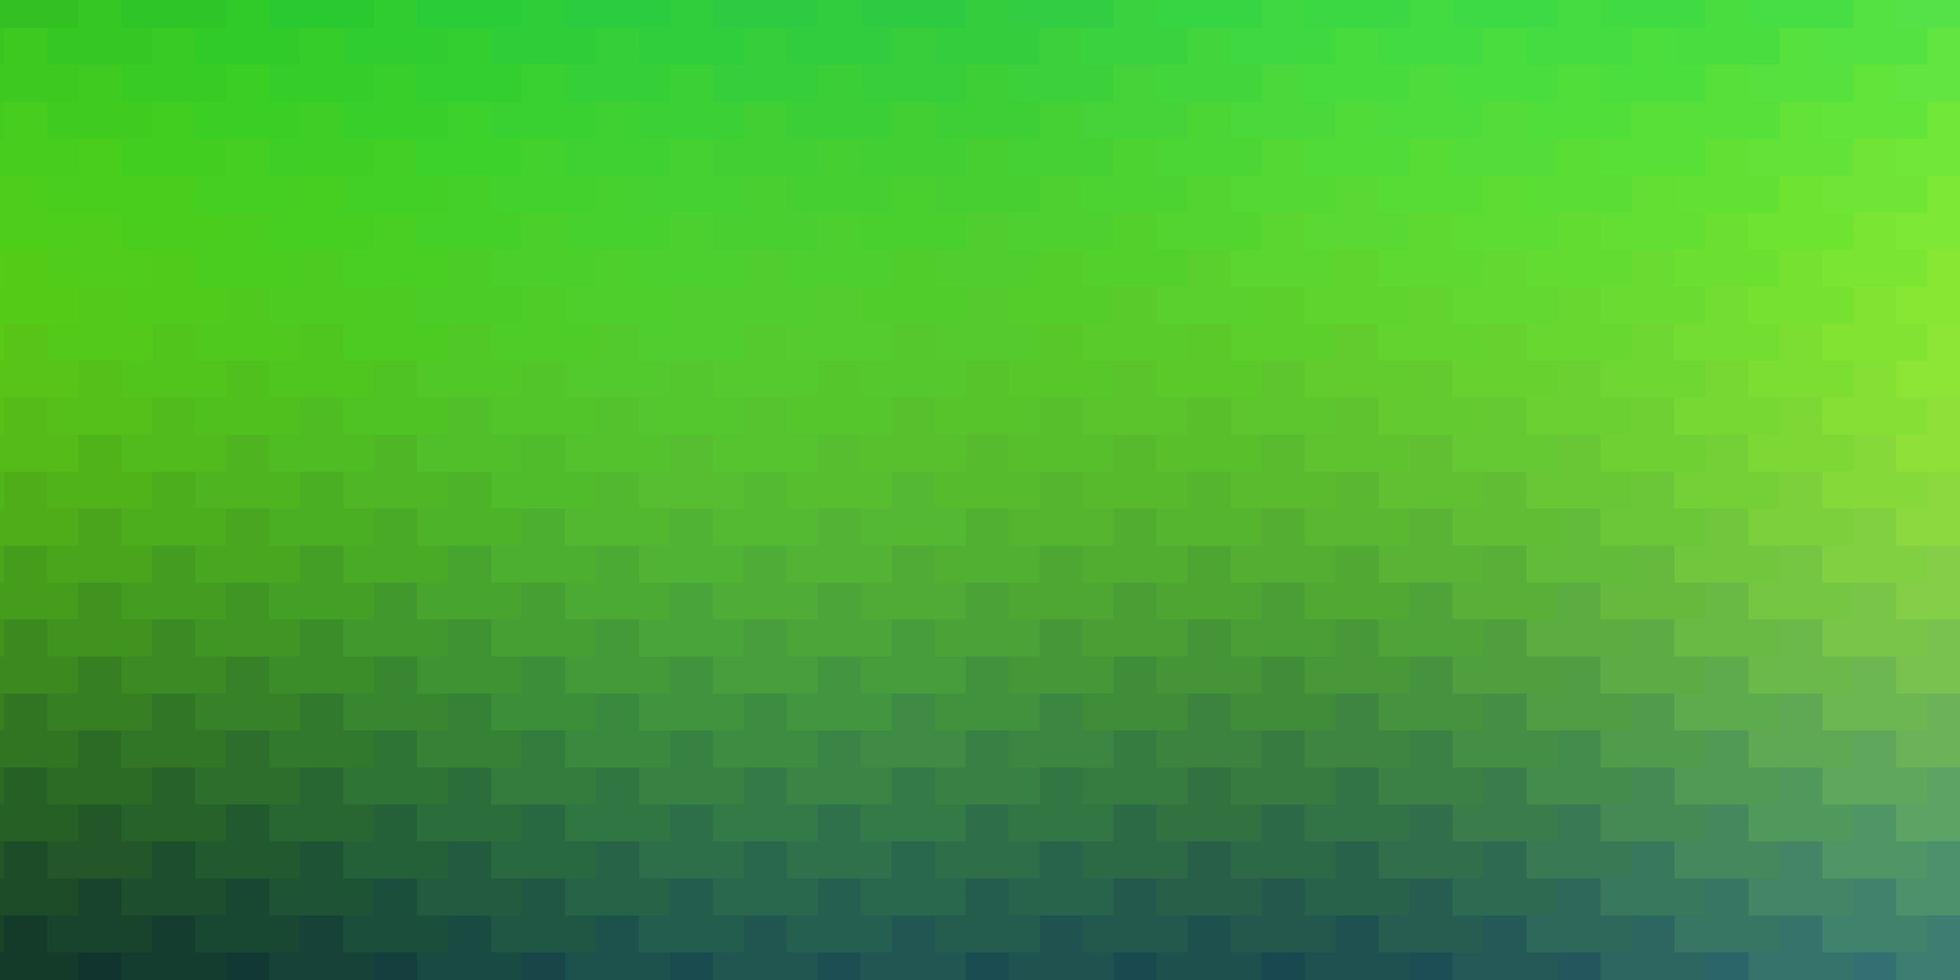 plantilla de vector azul claro, verde en rectángulos.